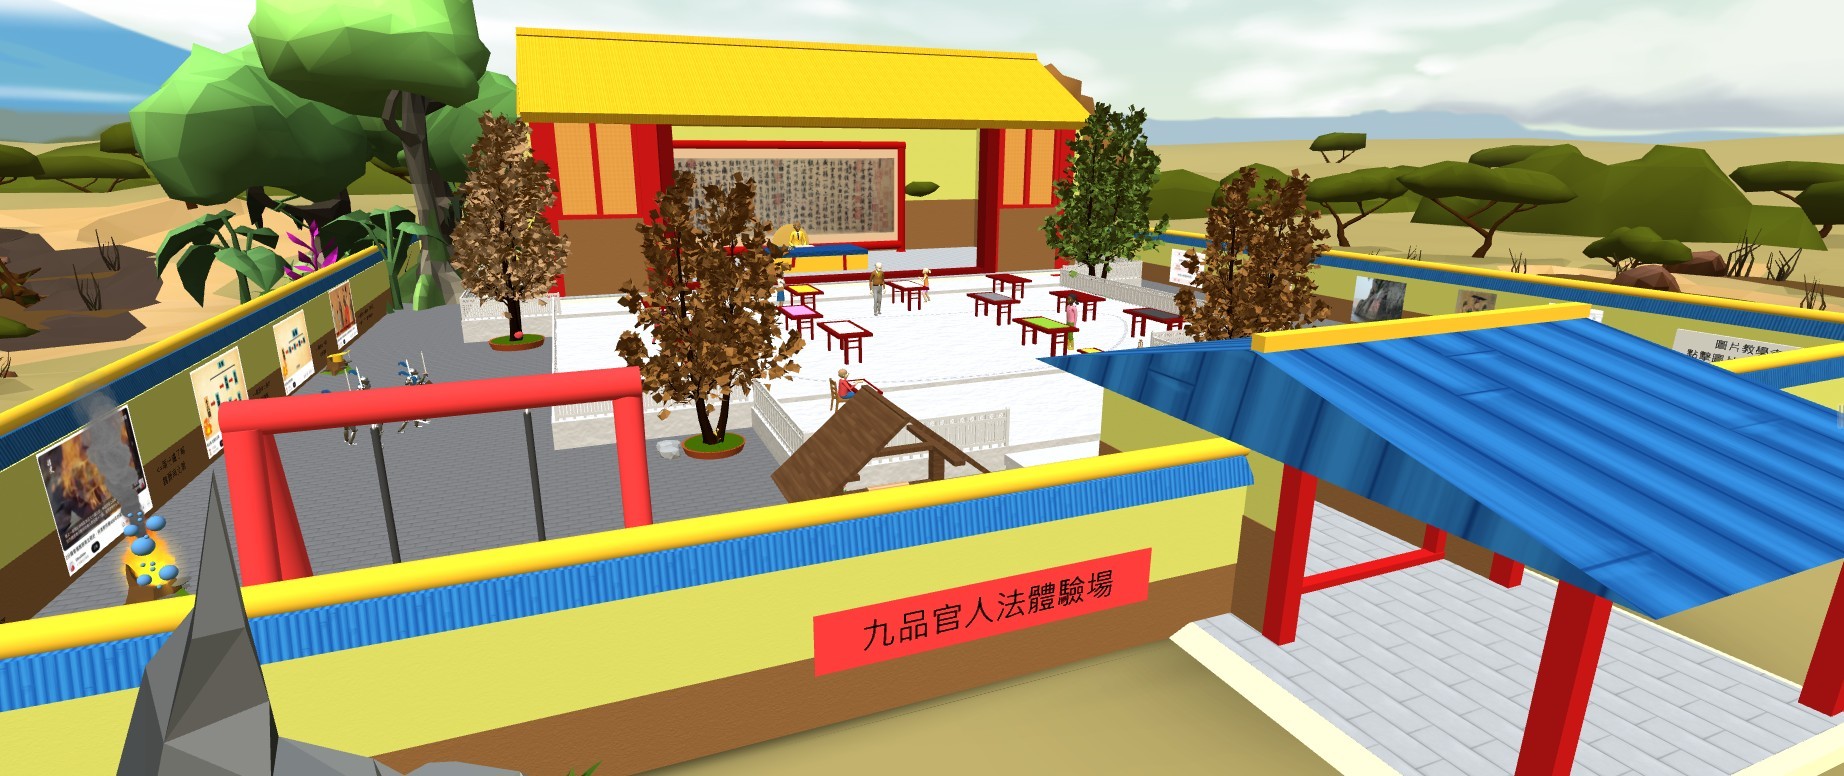 圖為亞大商應系同學得獎作品「魏晉南北朝VR歷史體驗營」，設計的VR場景。